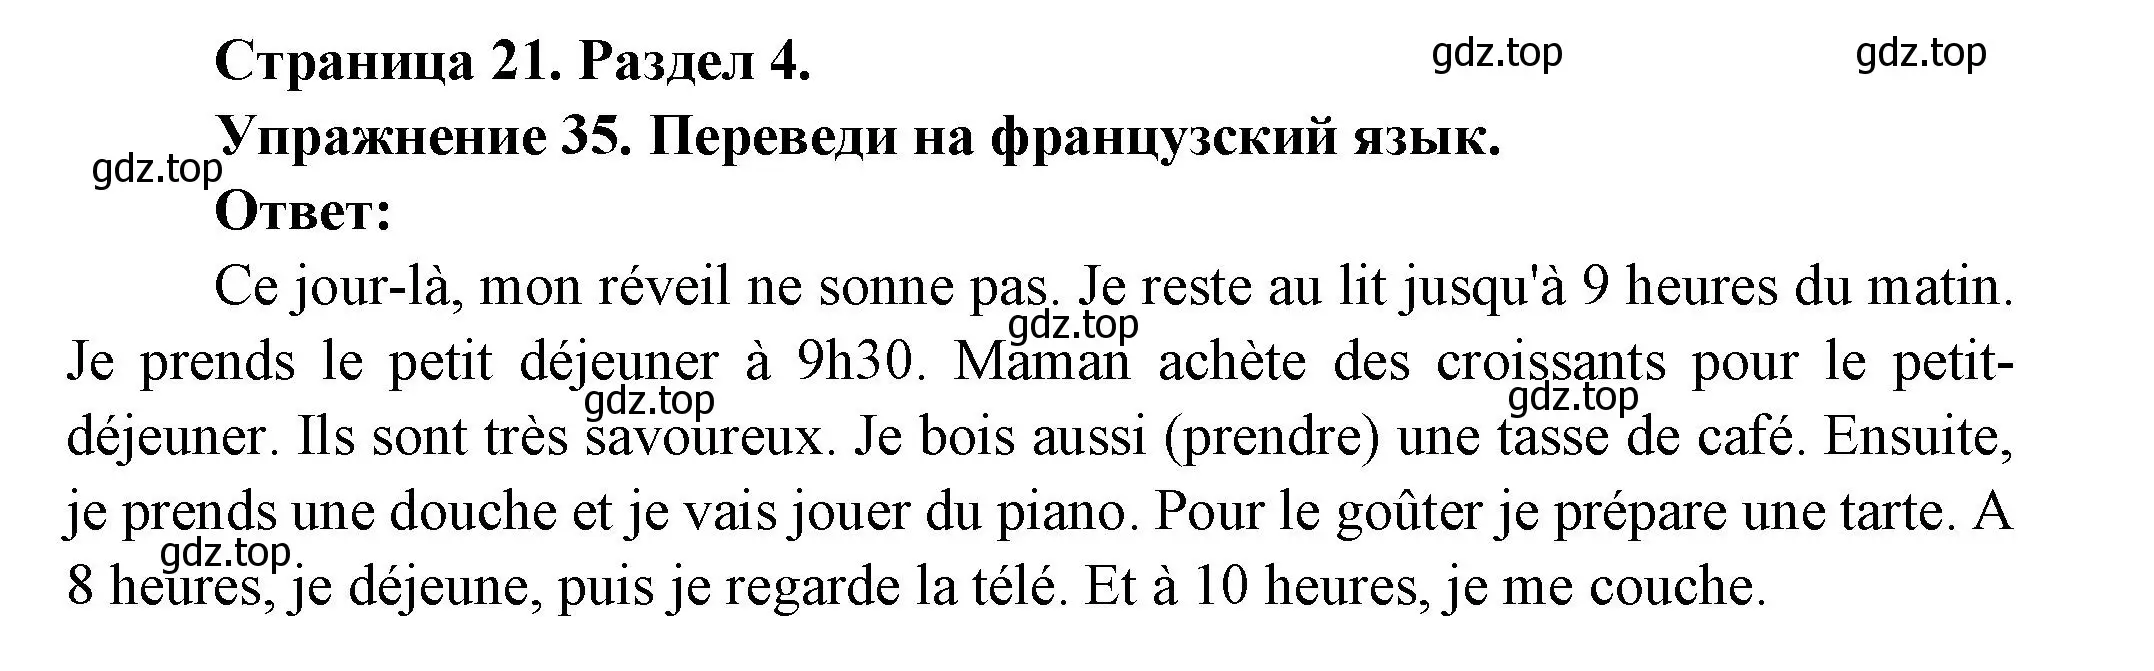 Решение номер 35 (страница 21) гдз по французскому языку 5 класс Береговская, Белосельская, учебник 2 часть